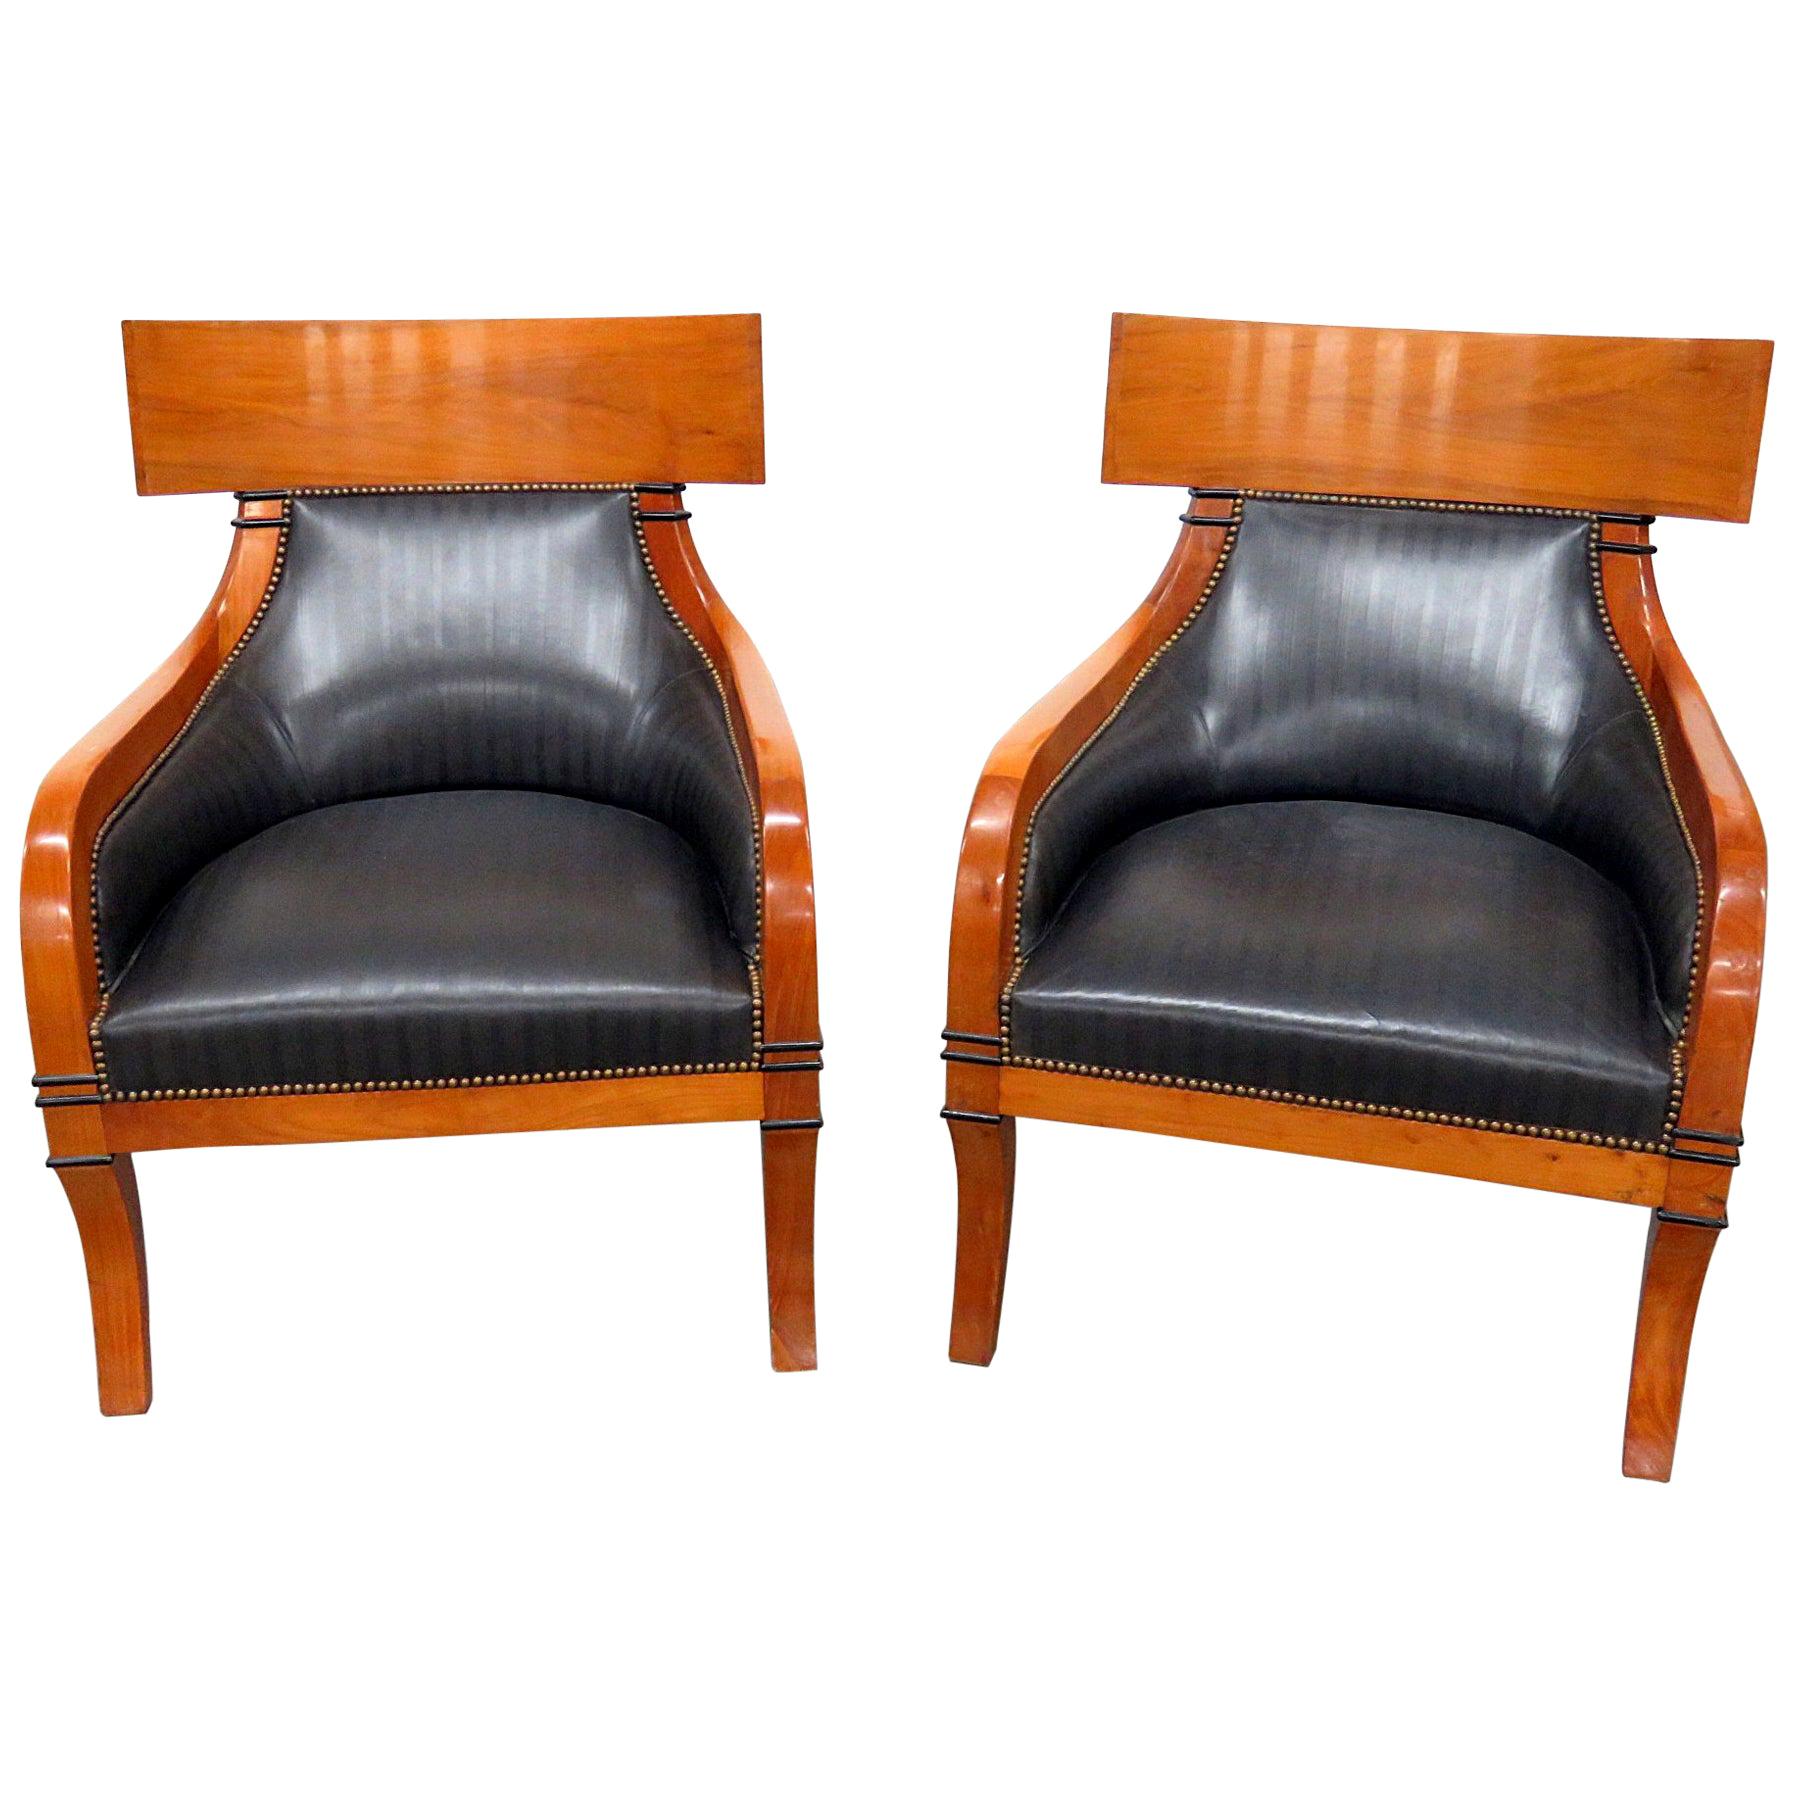 Pair of Biedermeier Style Club Chairs